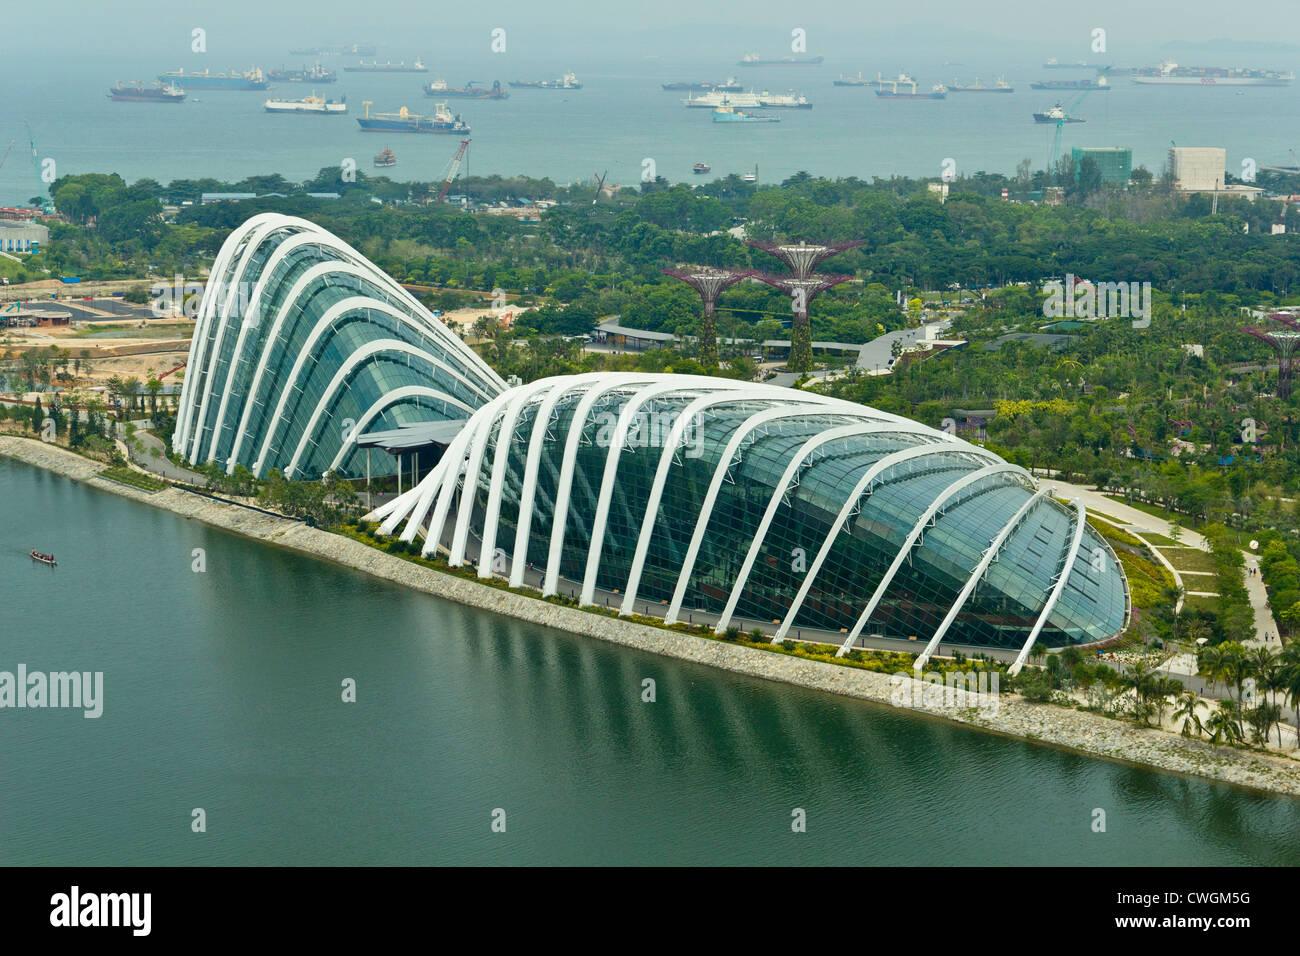 L'intérieur des dômes Gardens by the Bay à Singapour. Ce sont les 2 conservatoires de les jardins de la baie, visible à partir de la circulaire. Banque D'Images